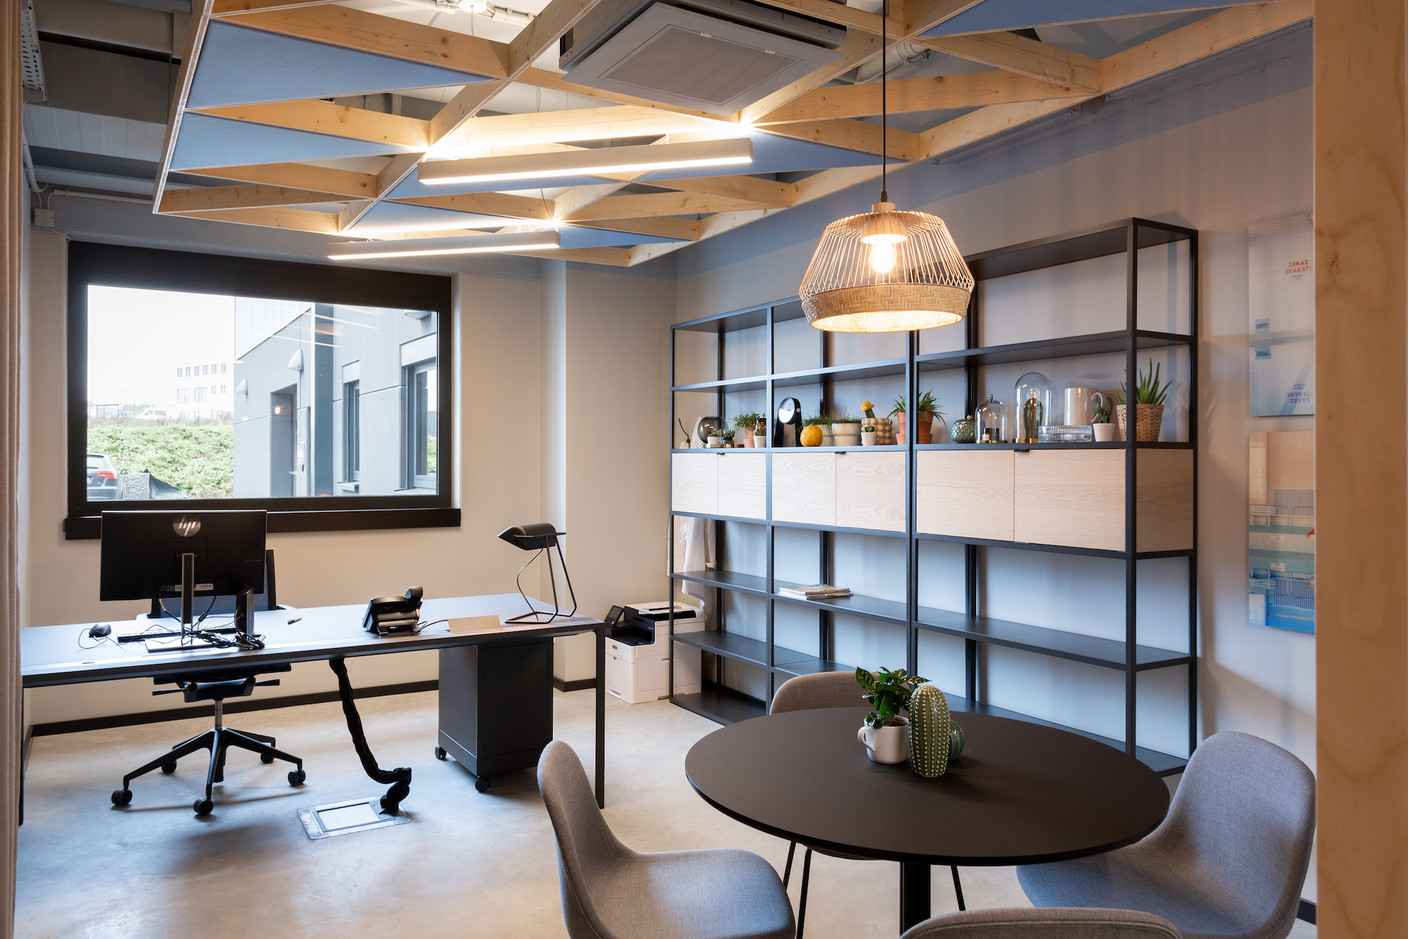 Dans les bureaux, les faux plafonds améliorent l’acoustique et intègrent les luminaires. (Photo: Patty Neu)